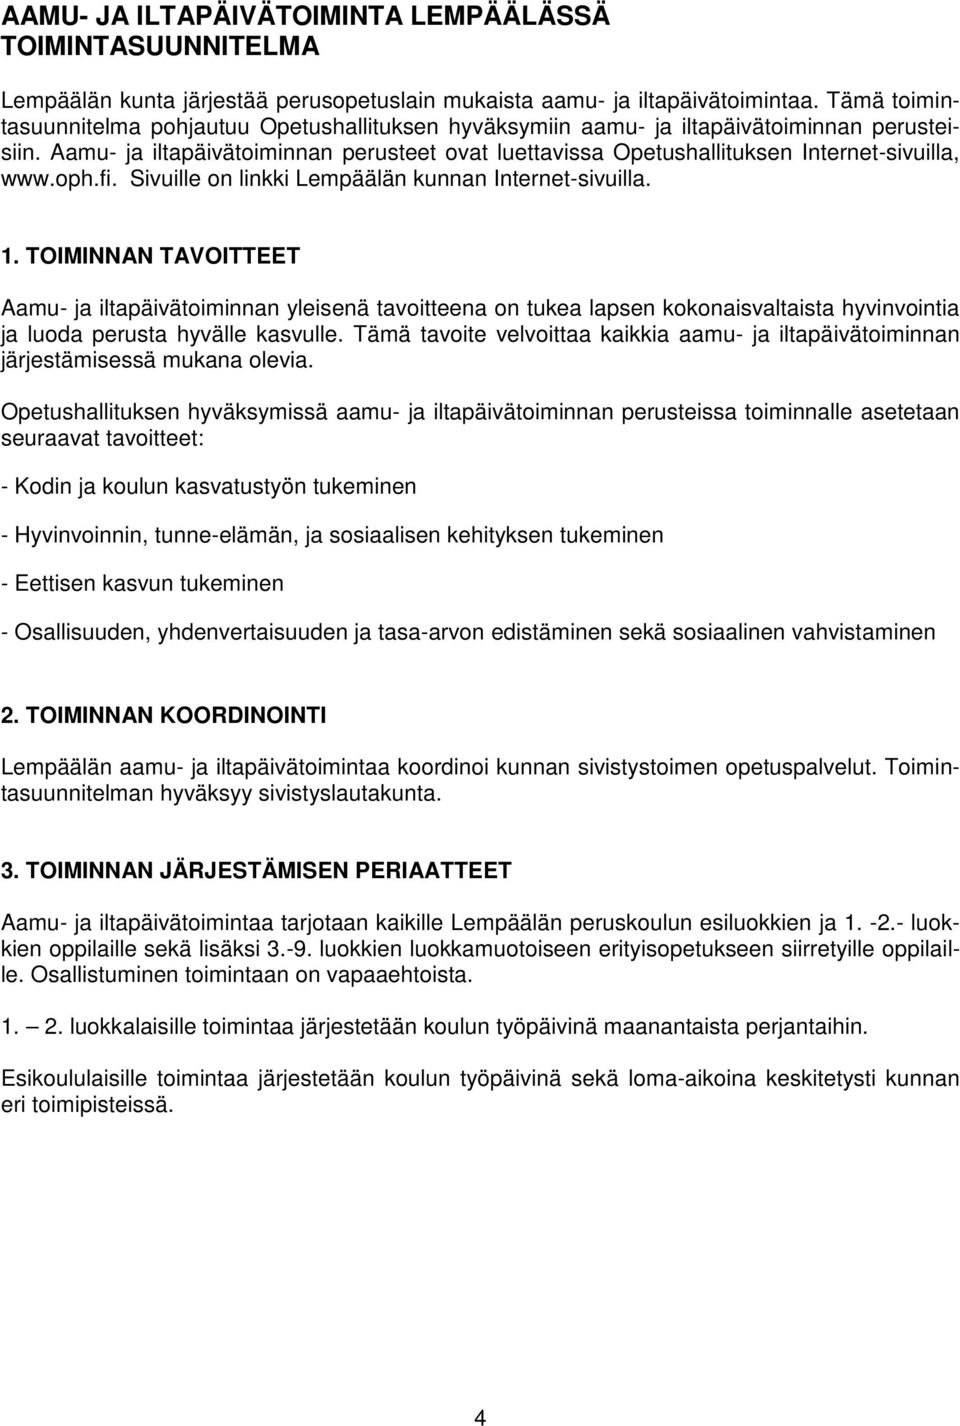 Aamu- ja iltapäivätoiminnan perusteet ovat luettavissa Opetushallituksen Internet-sivuilla, www.oph.fi. Sivuille on linkki Lempäälän kunnan Internet-sivuilla. 1.